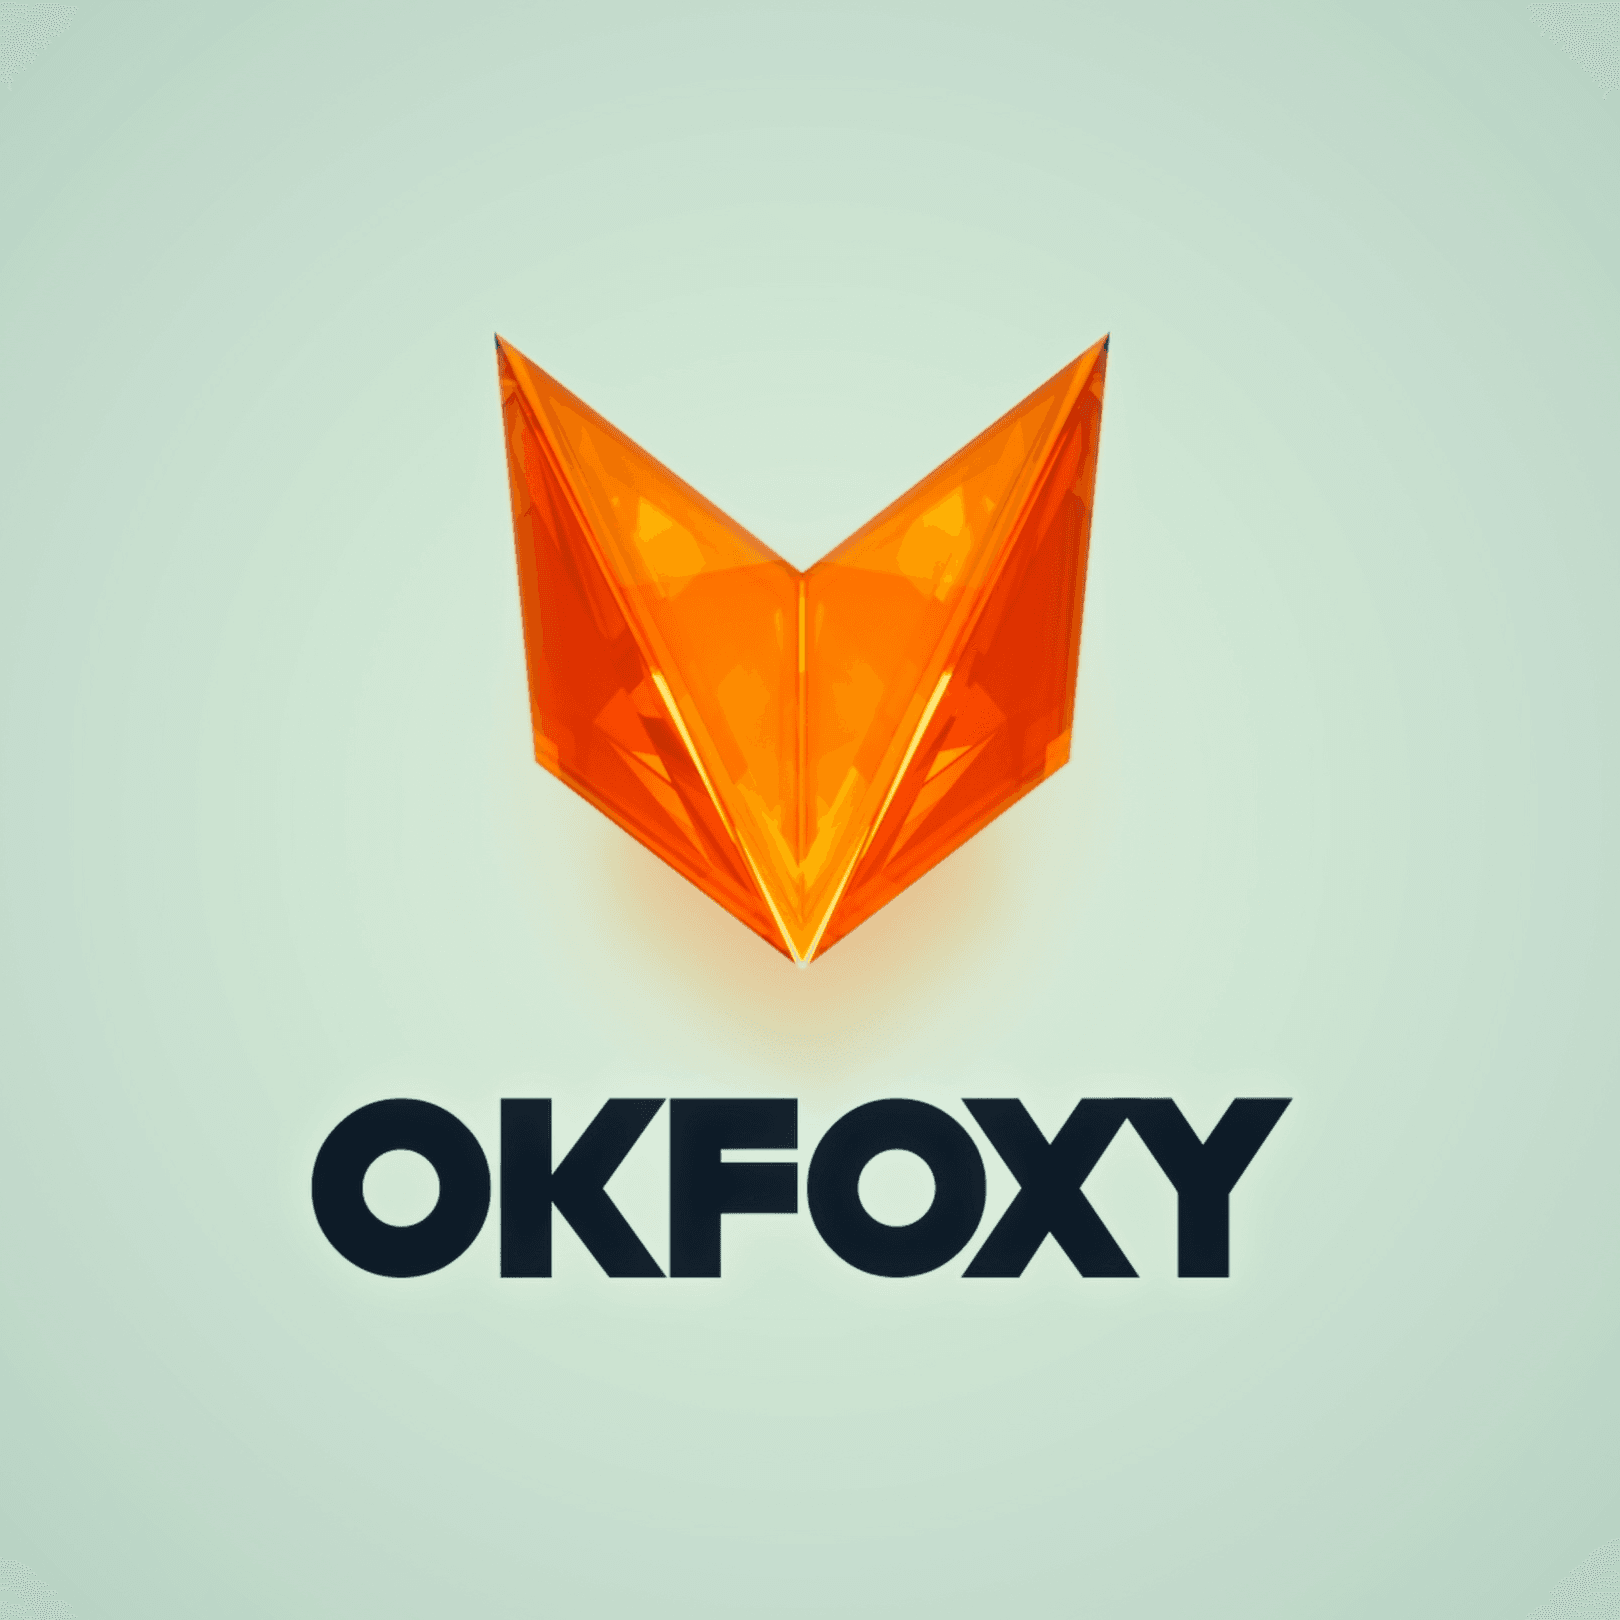 OKFOXY